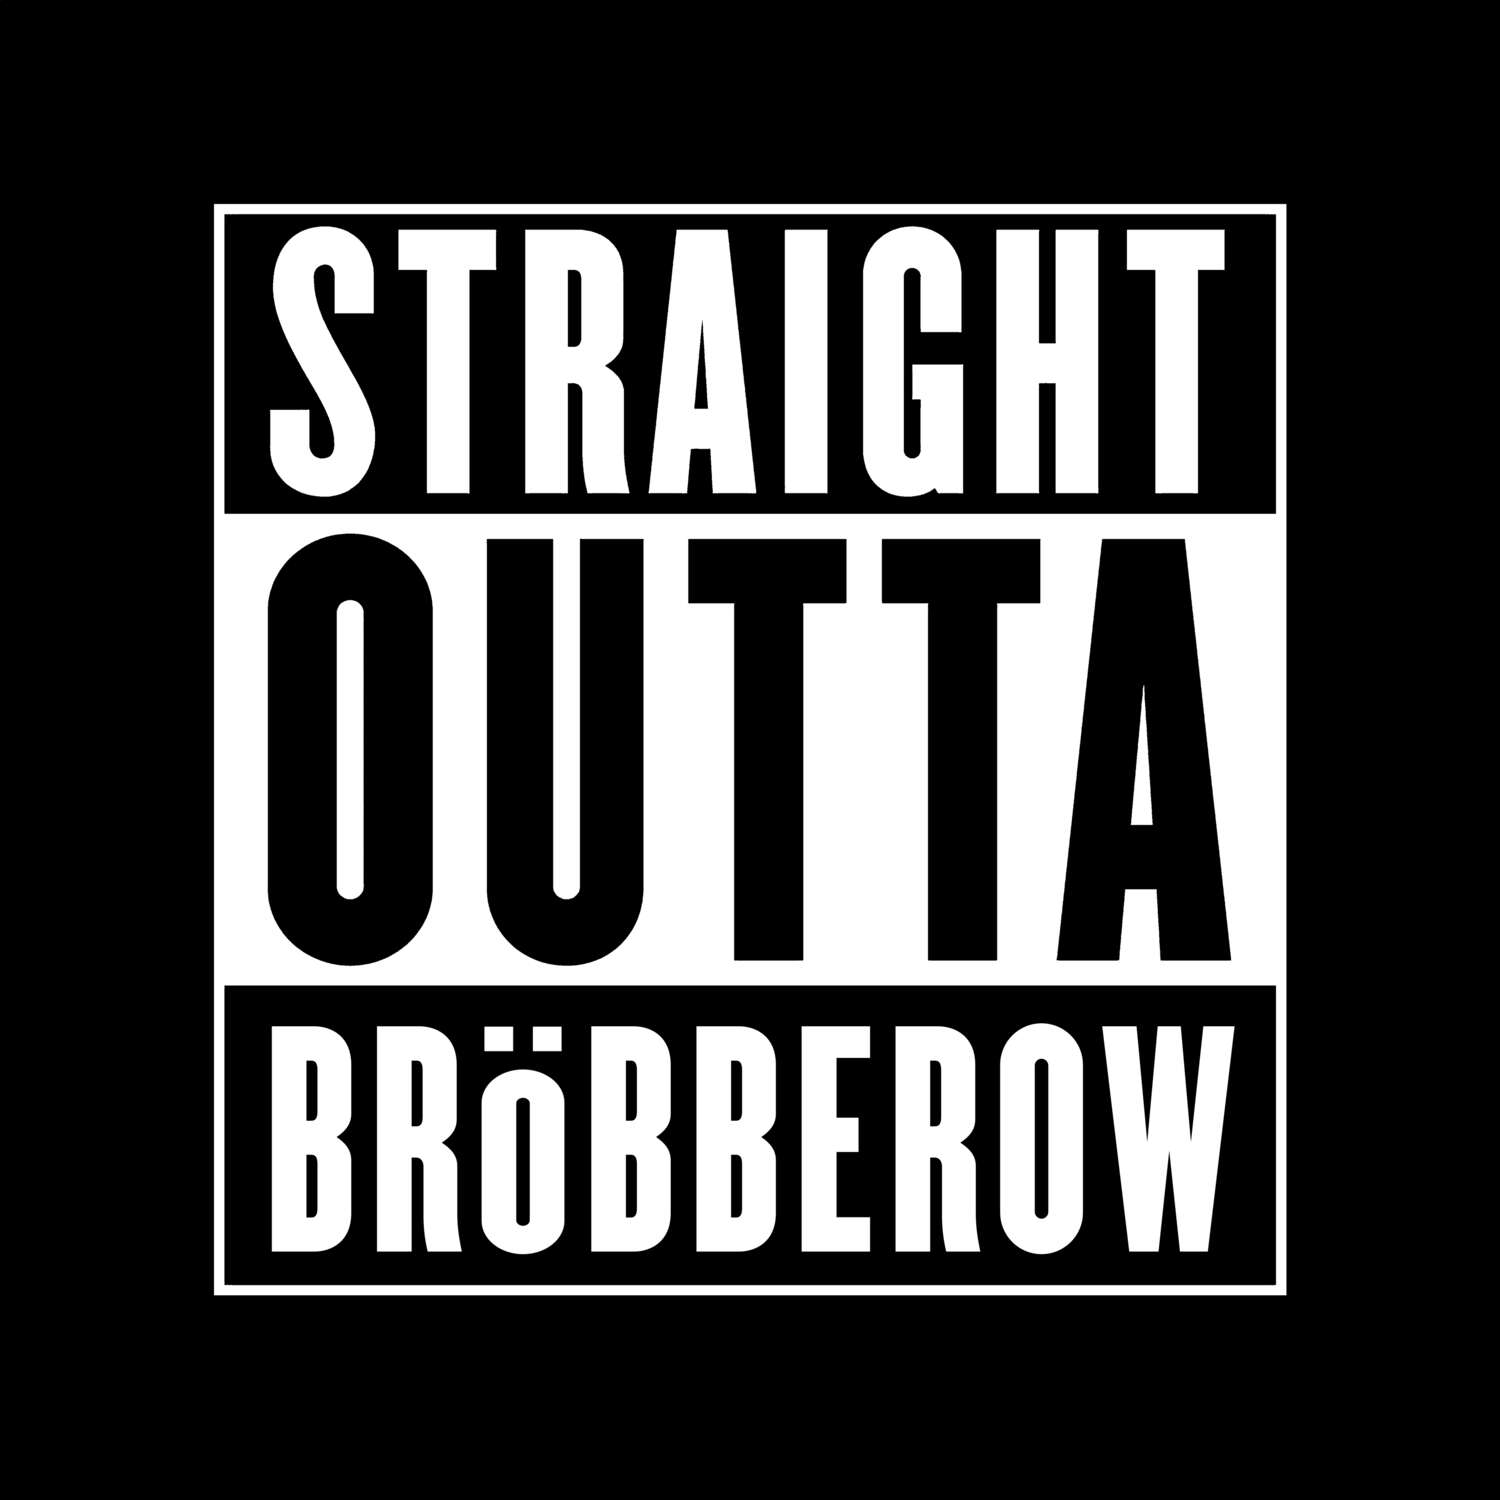 Bröbberow T-Shirt »Straight Outta«